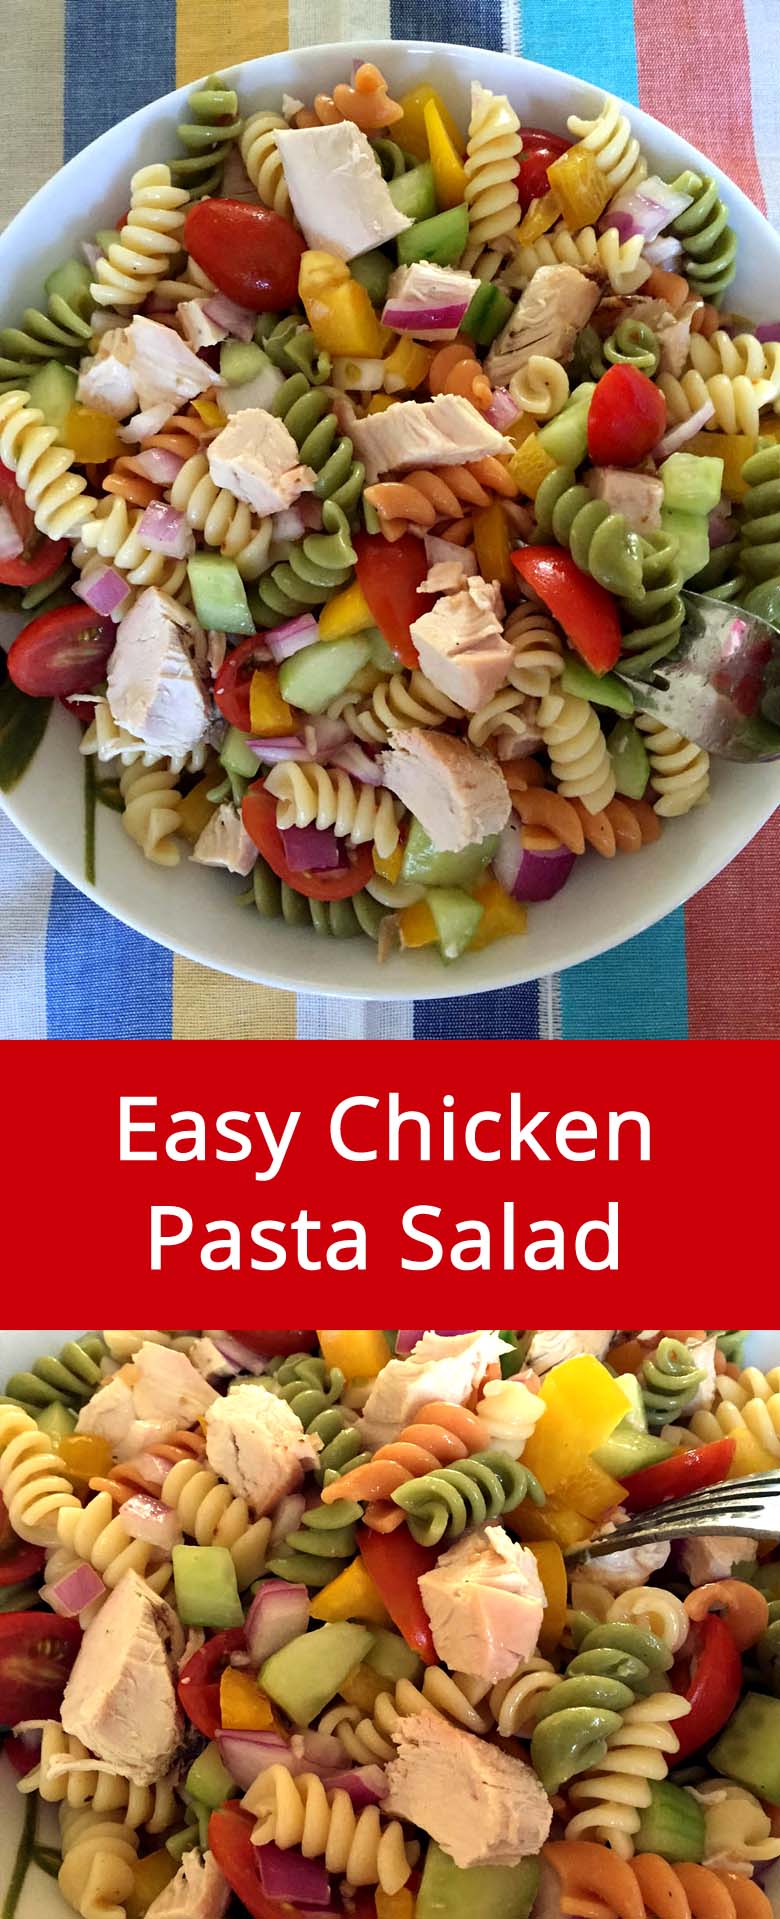 Easy Chicken Pasta Salad - Healthy Main Dish Pasta Salad ...